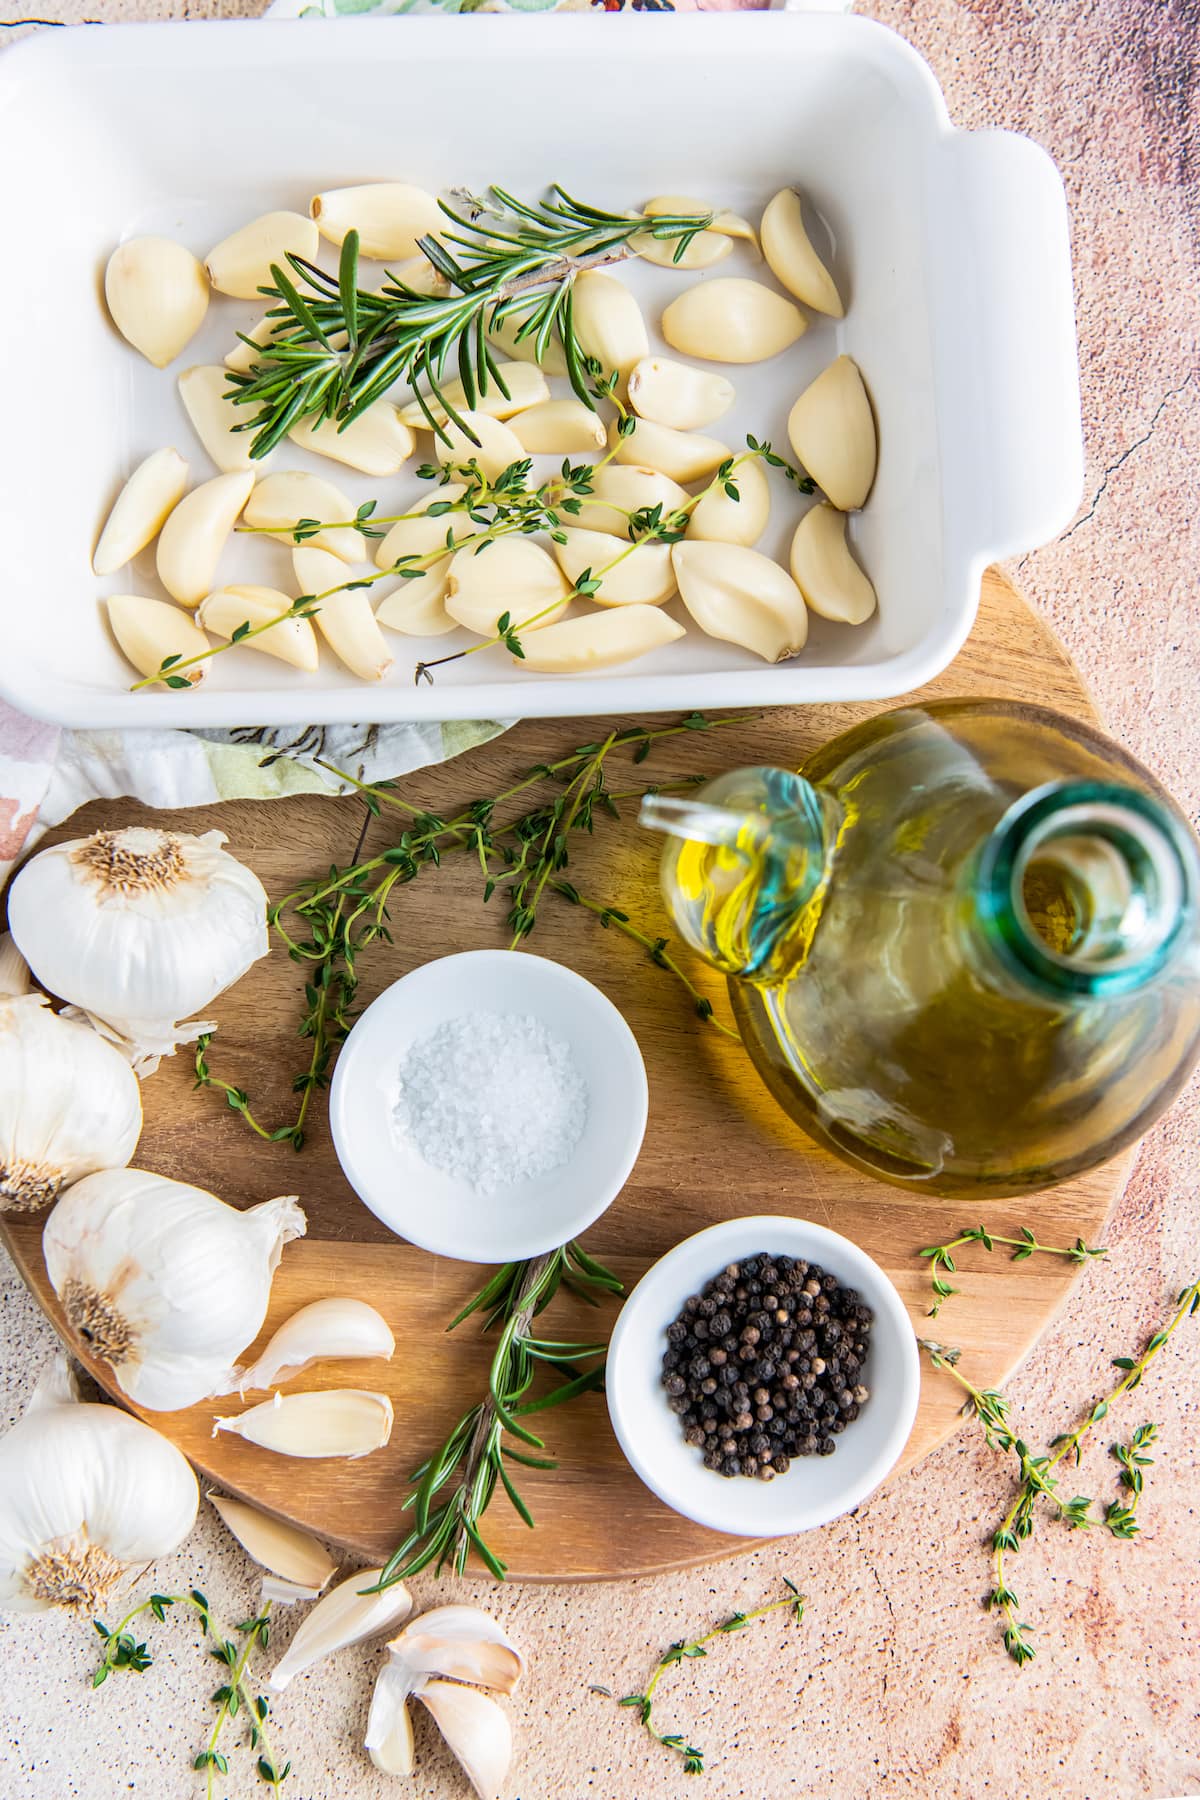 Ingredients to make garlic confit.